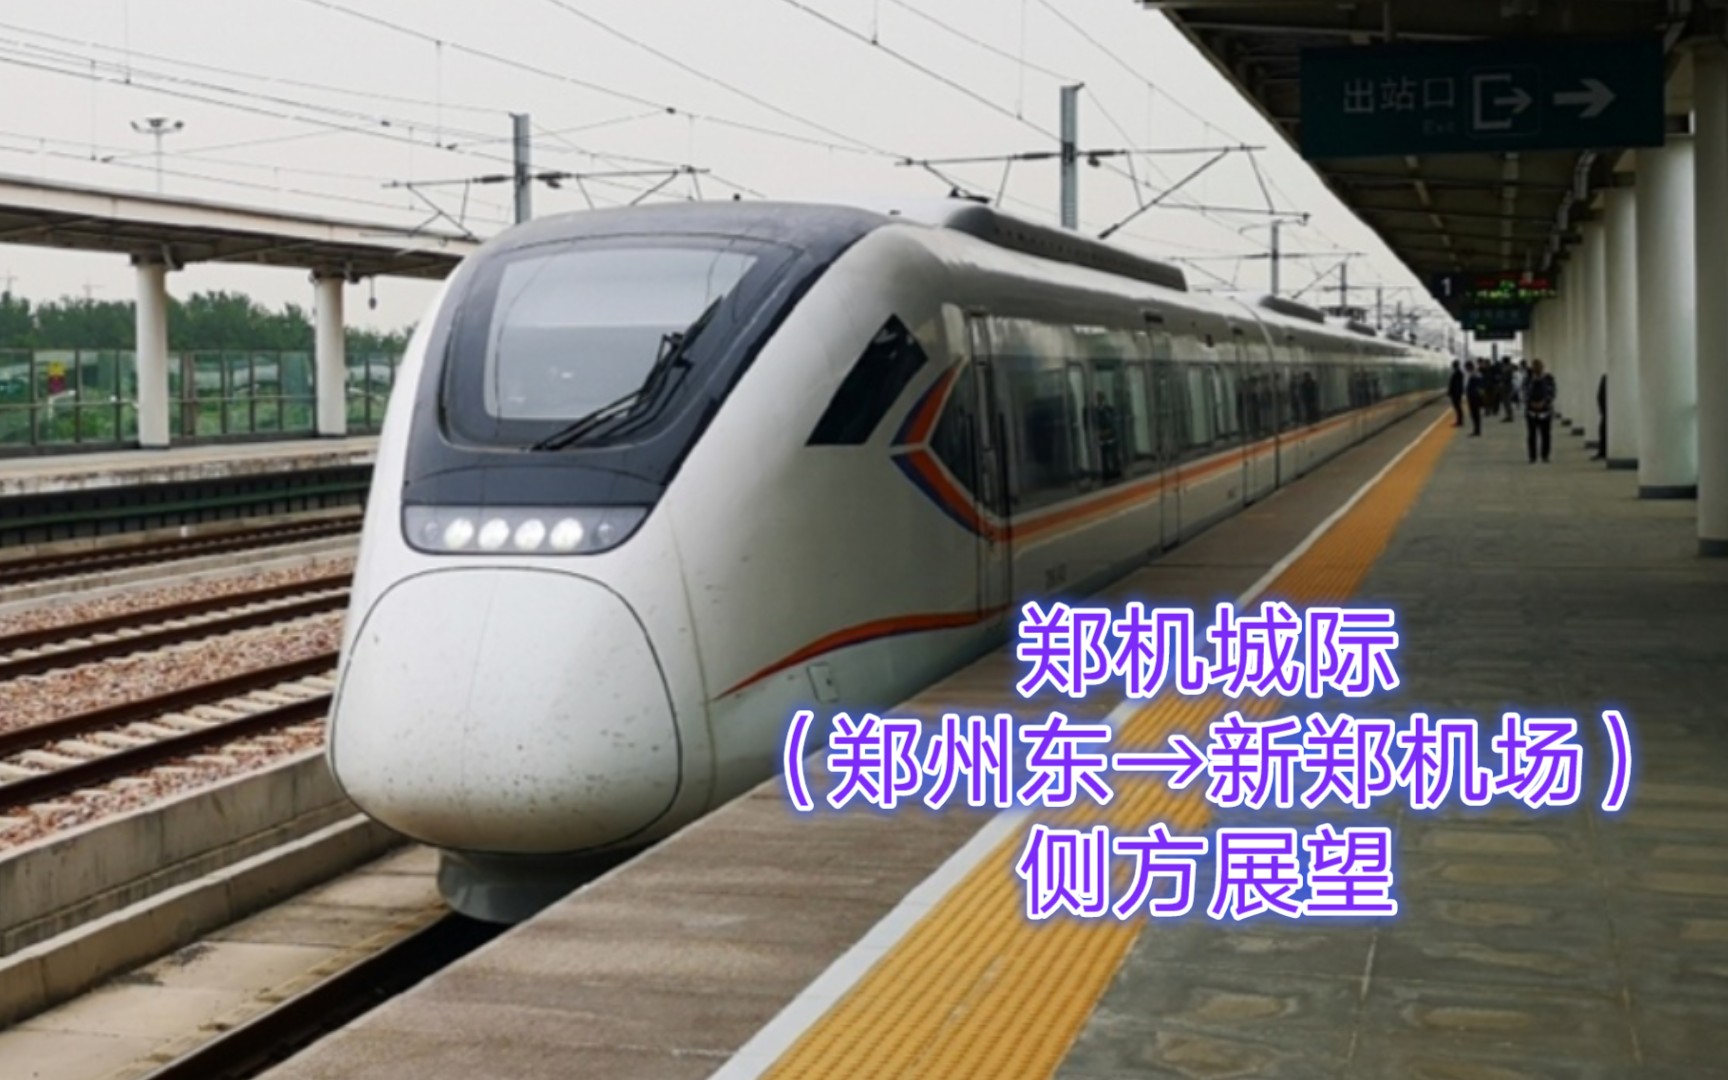 【中国铁路pov】郑机城际(郑州东→新郑机场)左侧车窗展望